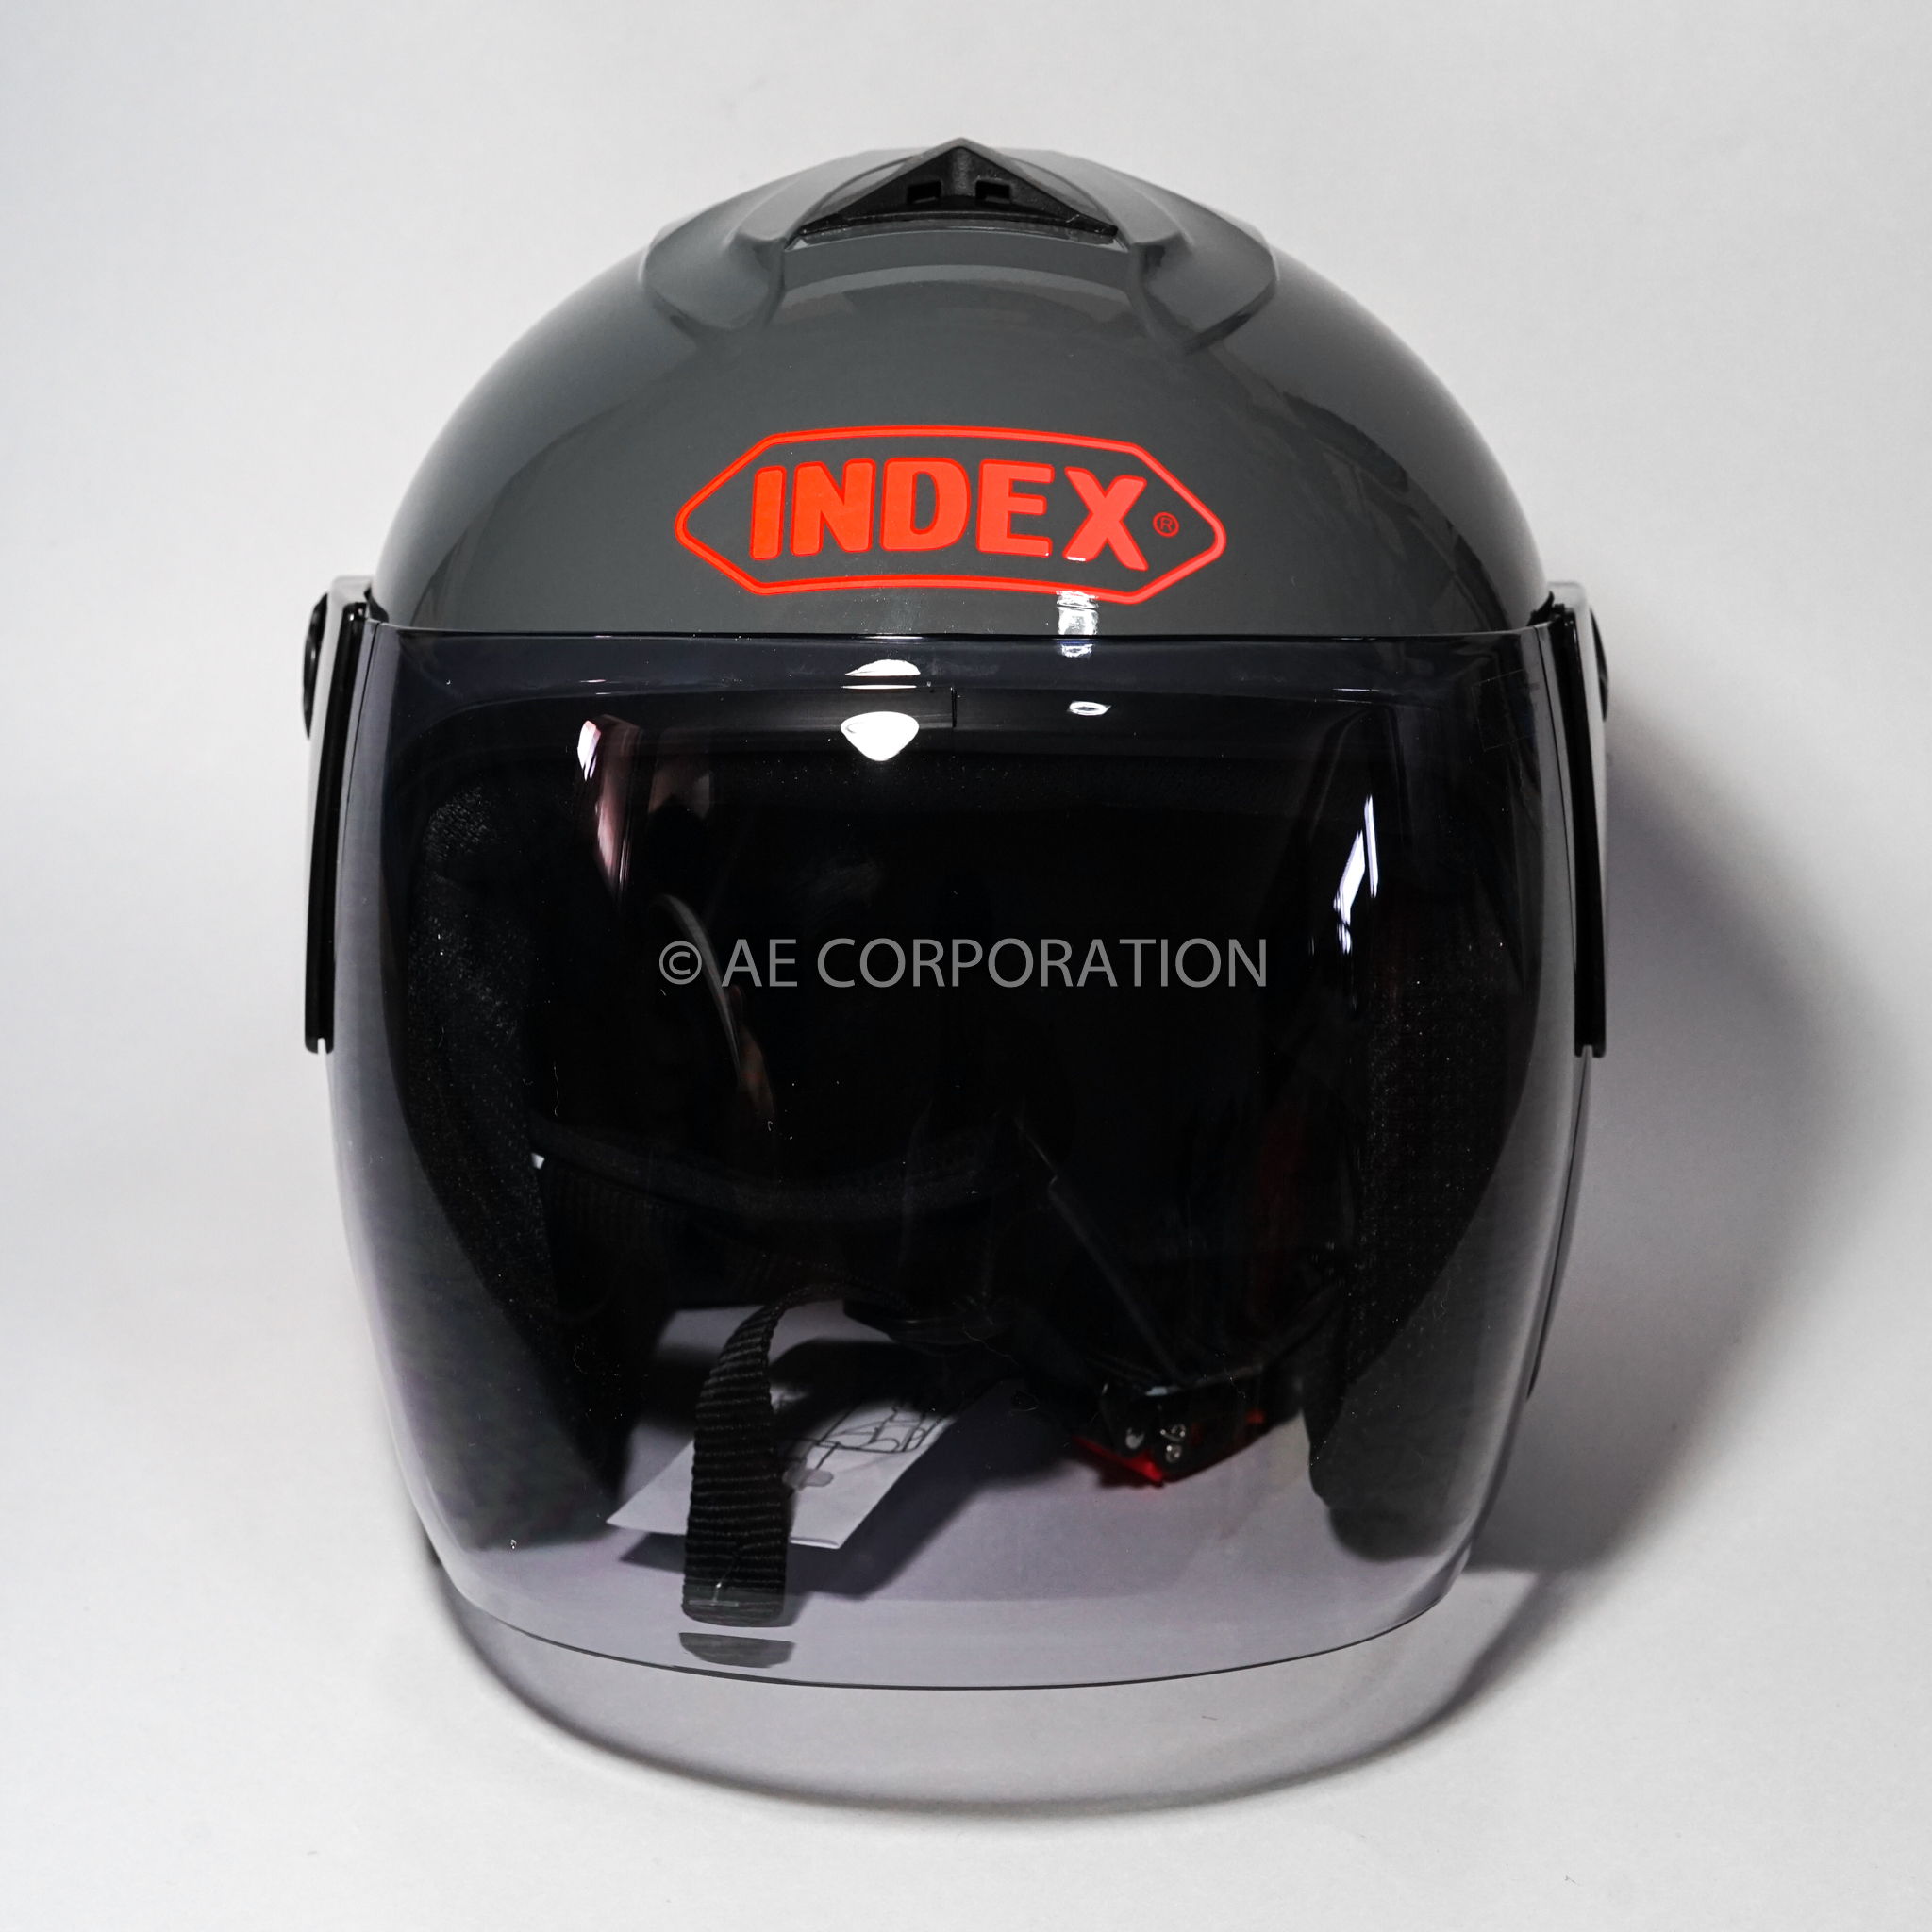 คำอธิบายเพิ่มเติมเกี่ยวกับ หมวกกันน็อค INDEX DUNK NEW หมวกกันน็อก ของแท้100% ไซต์L สีเทา 300IQ Racing